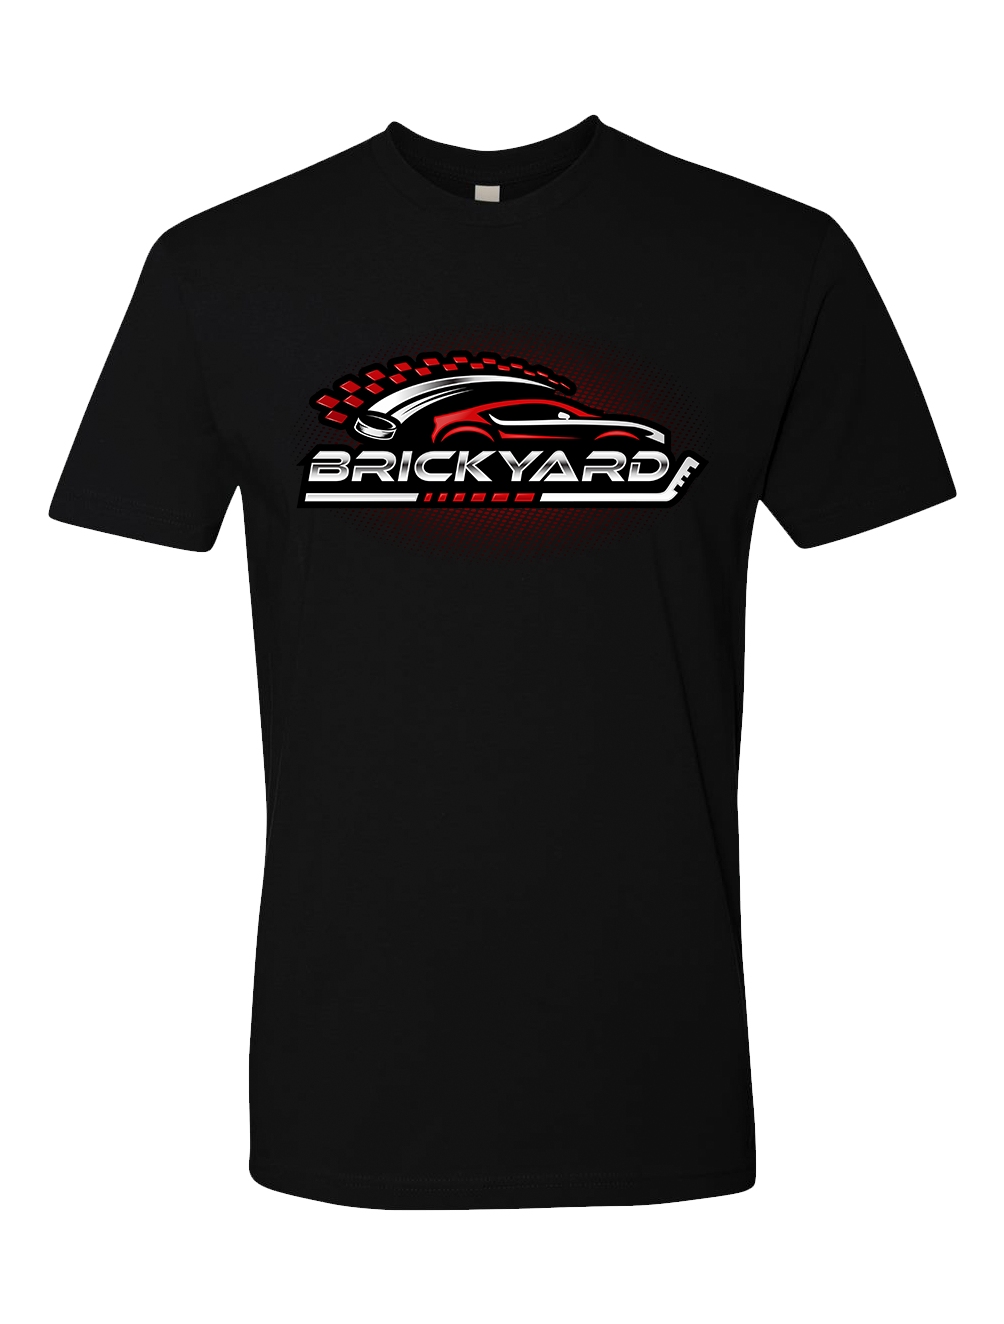 The Brickyard T-Shirt